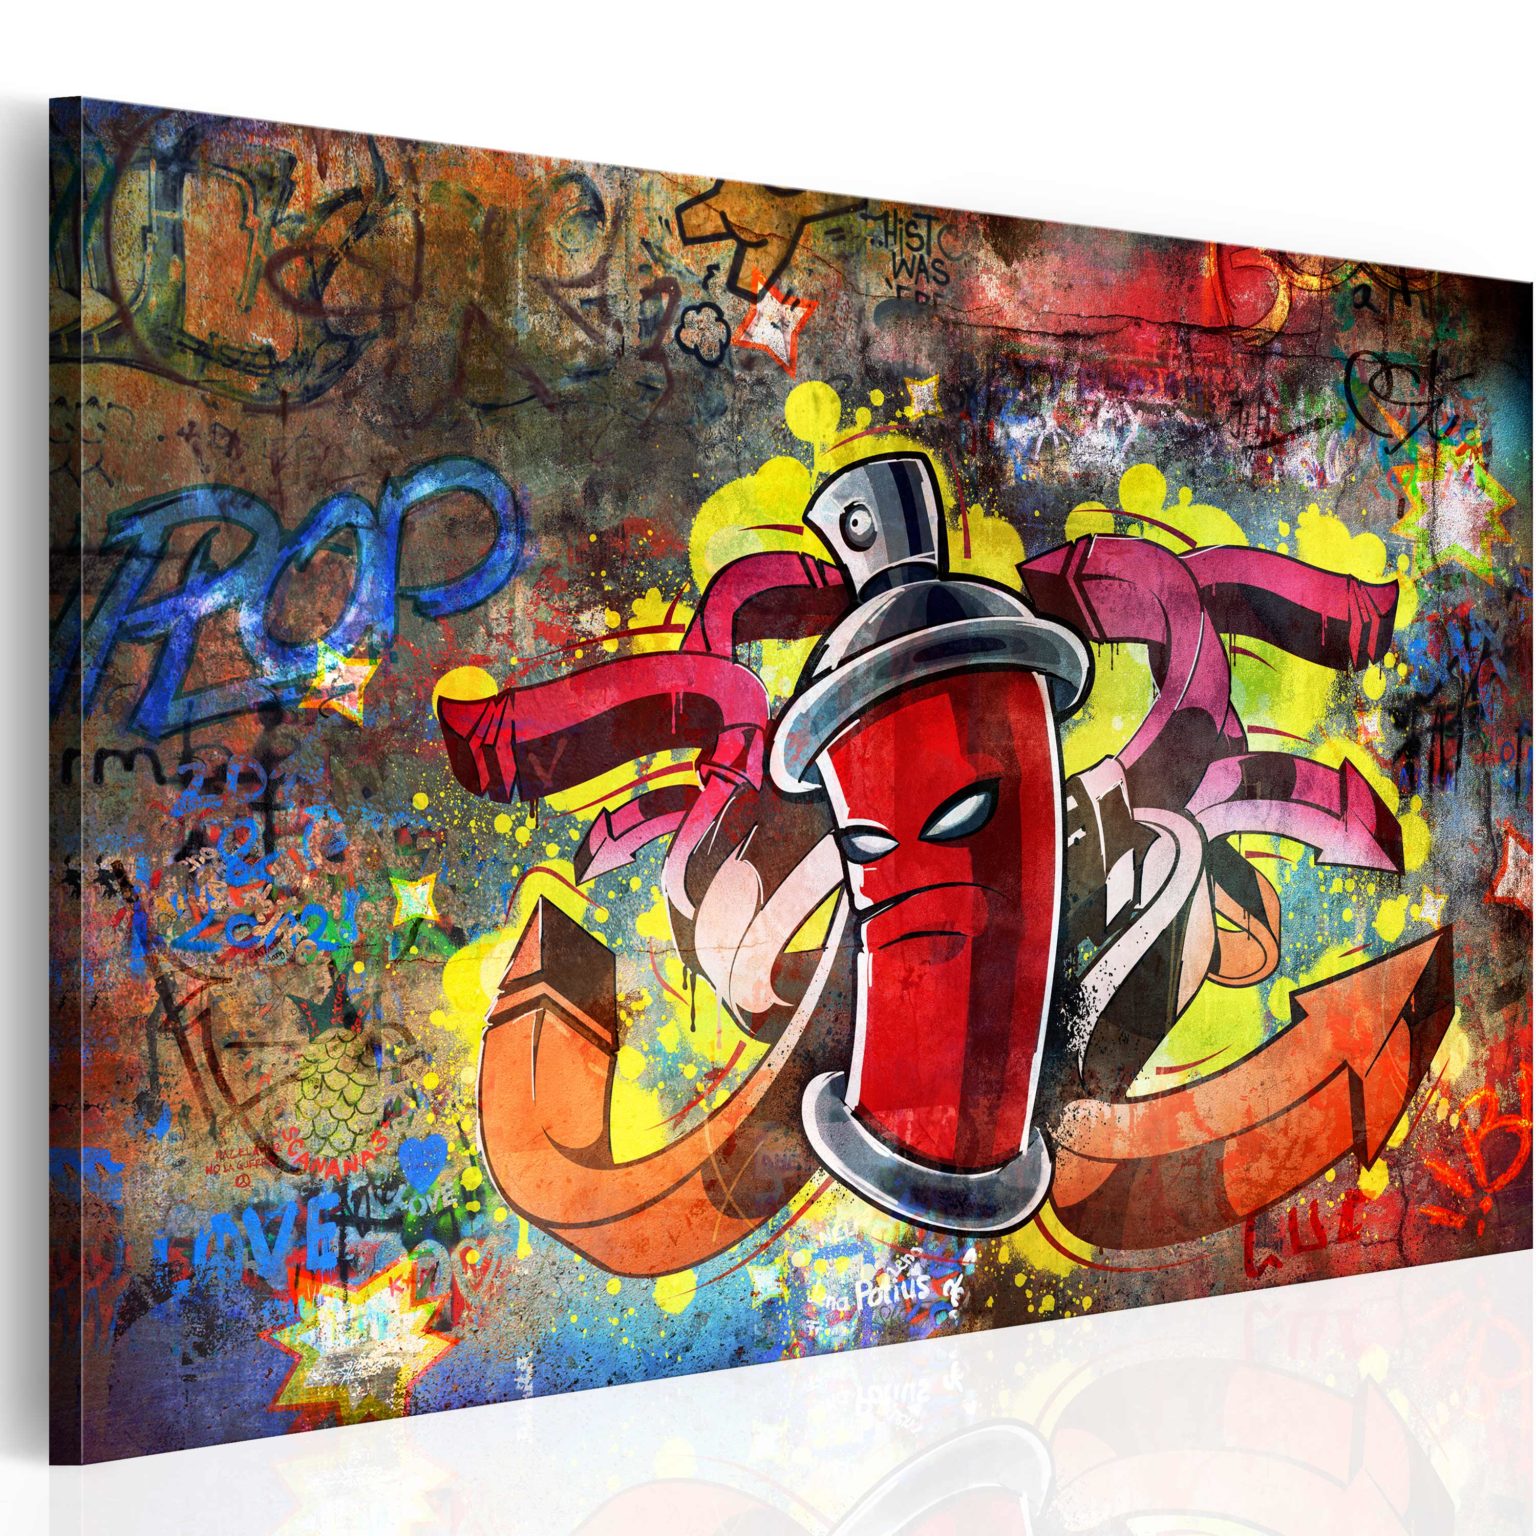 Tableau - Graffiti master fait partie des tableaux murales de la collection de worldofwomen découvrez ce magnifique tableau exclusif chez nous